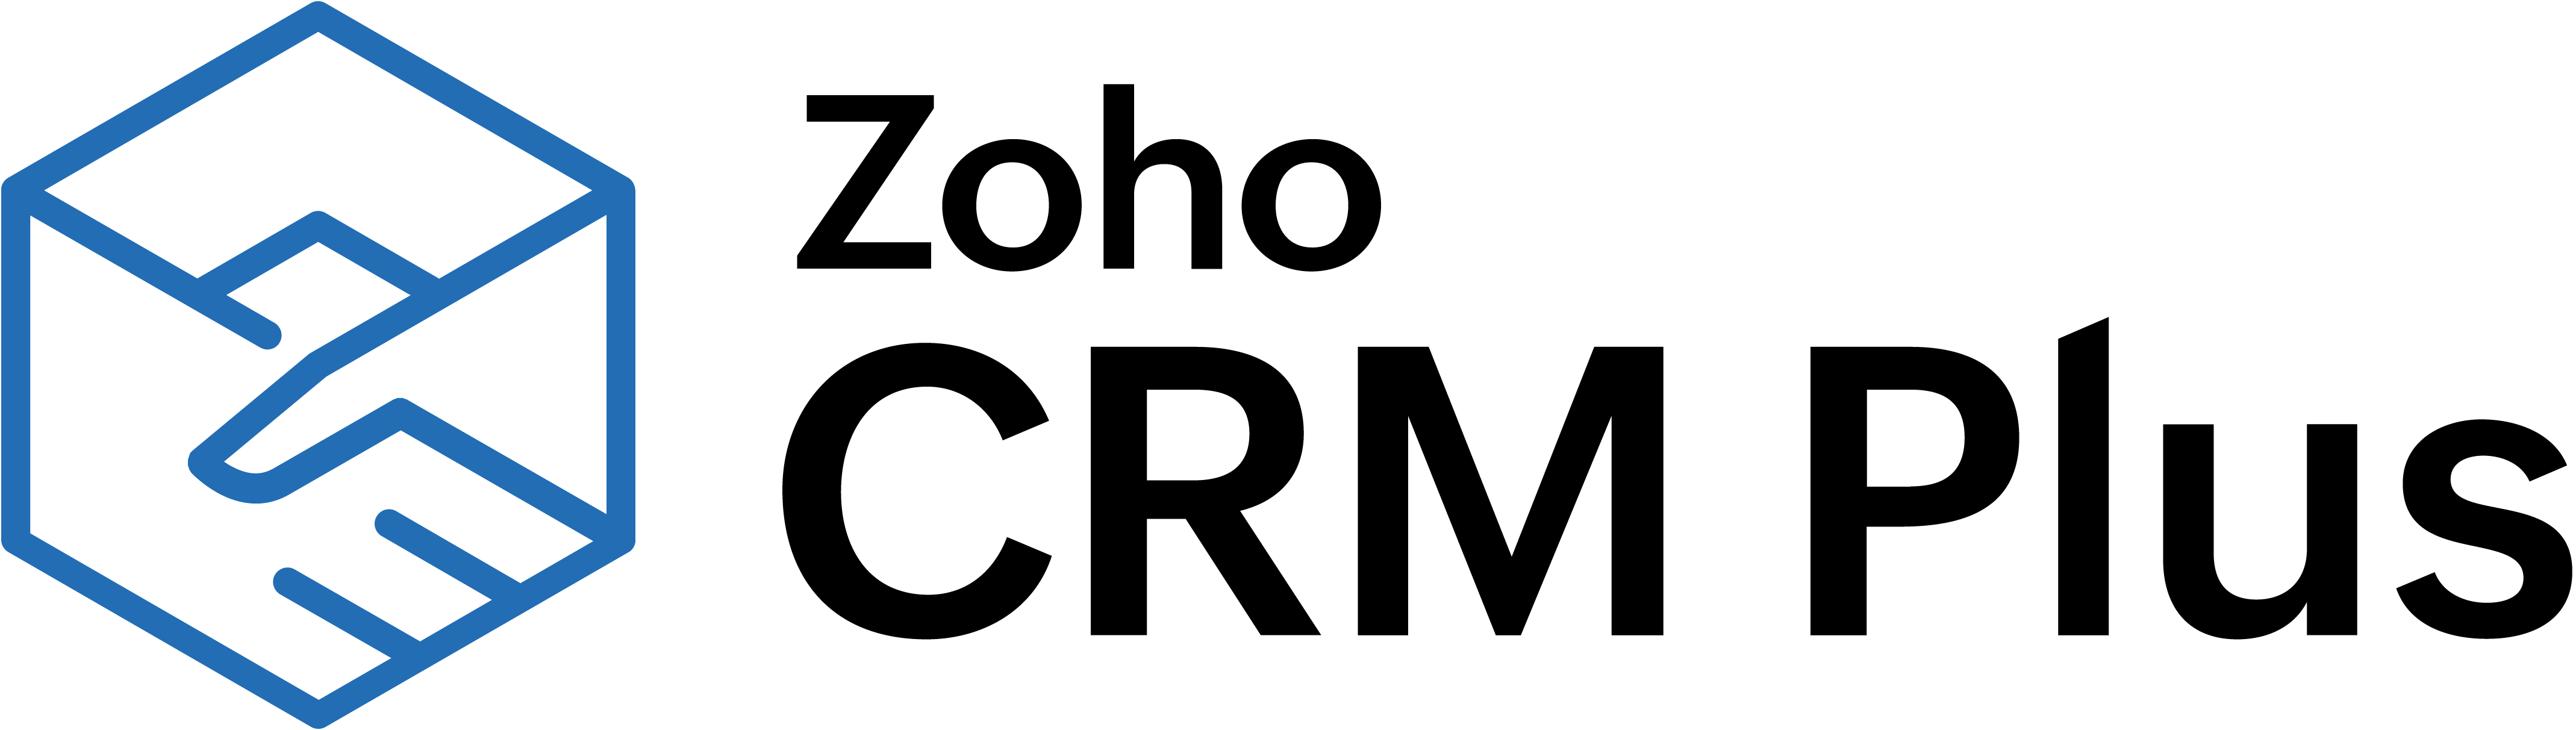 CRM Plus logo